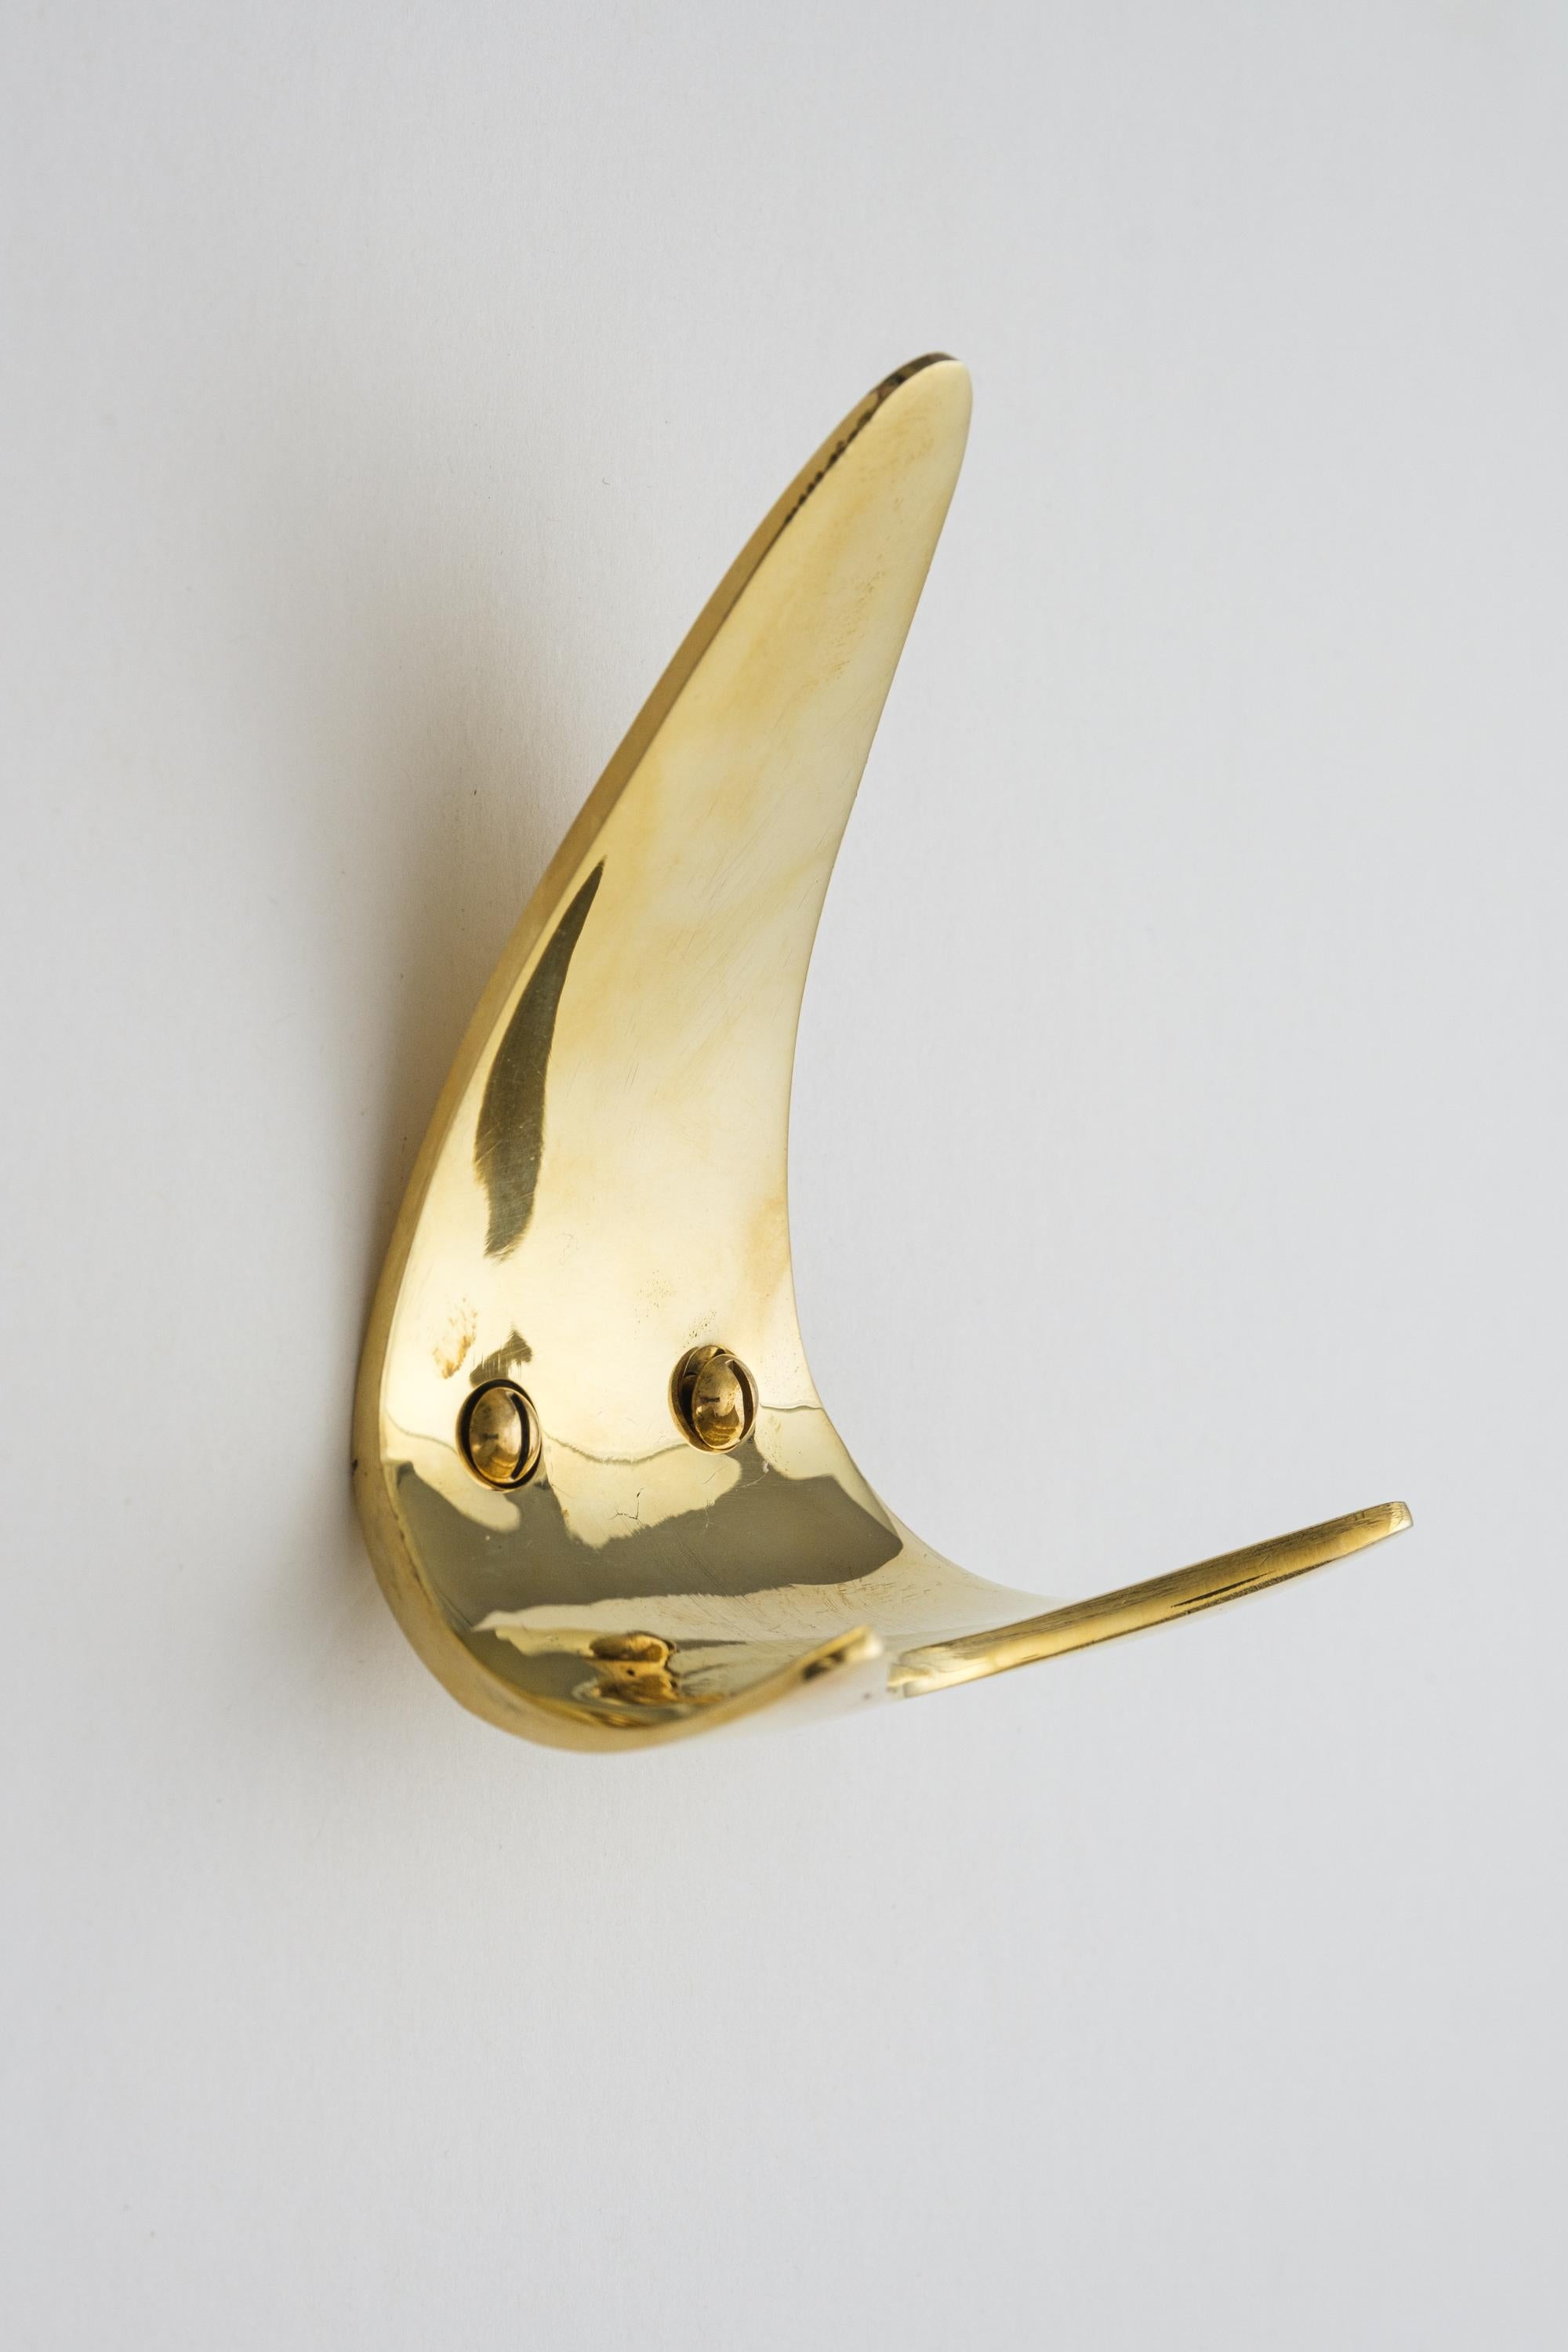 Austrian Carl Auböck Model #4086 Hook in Polished Brass For Sale